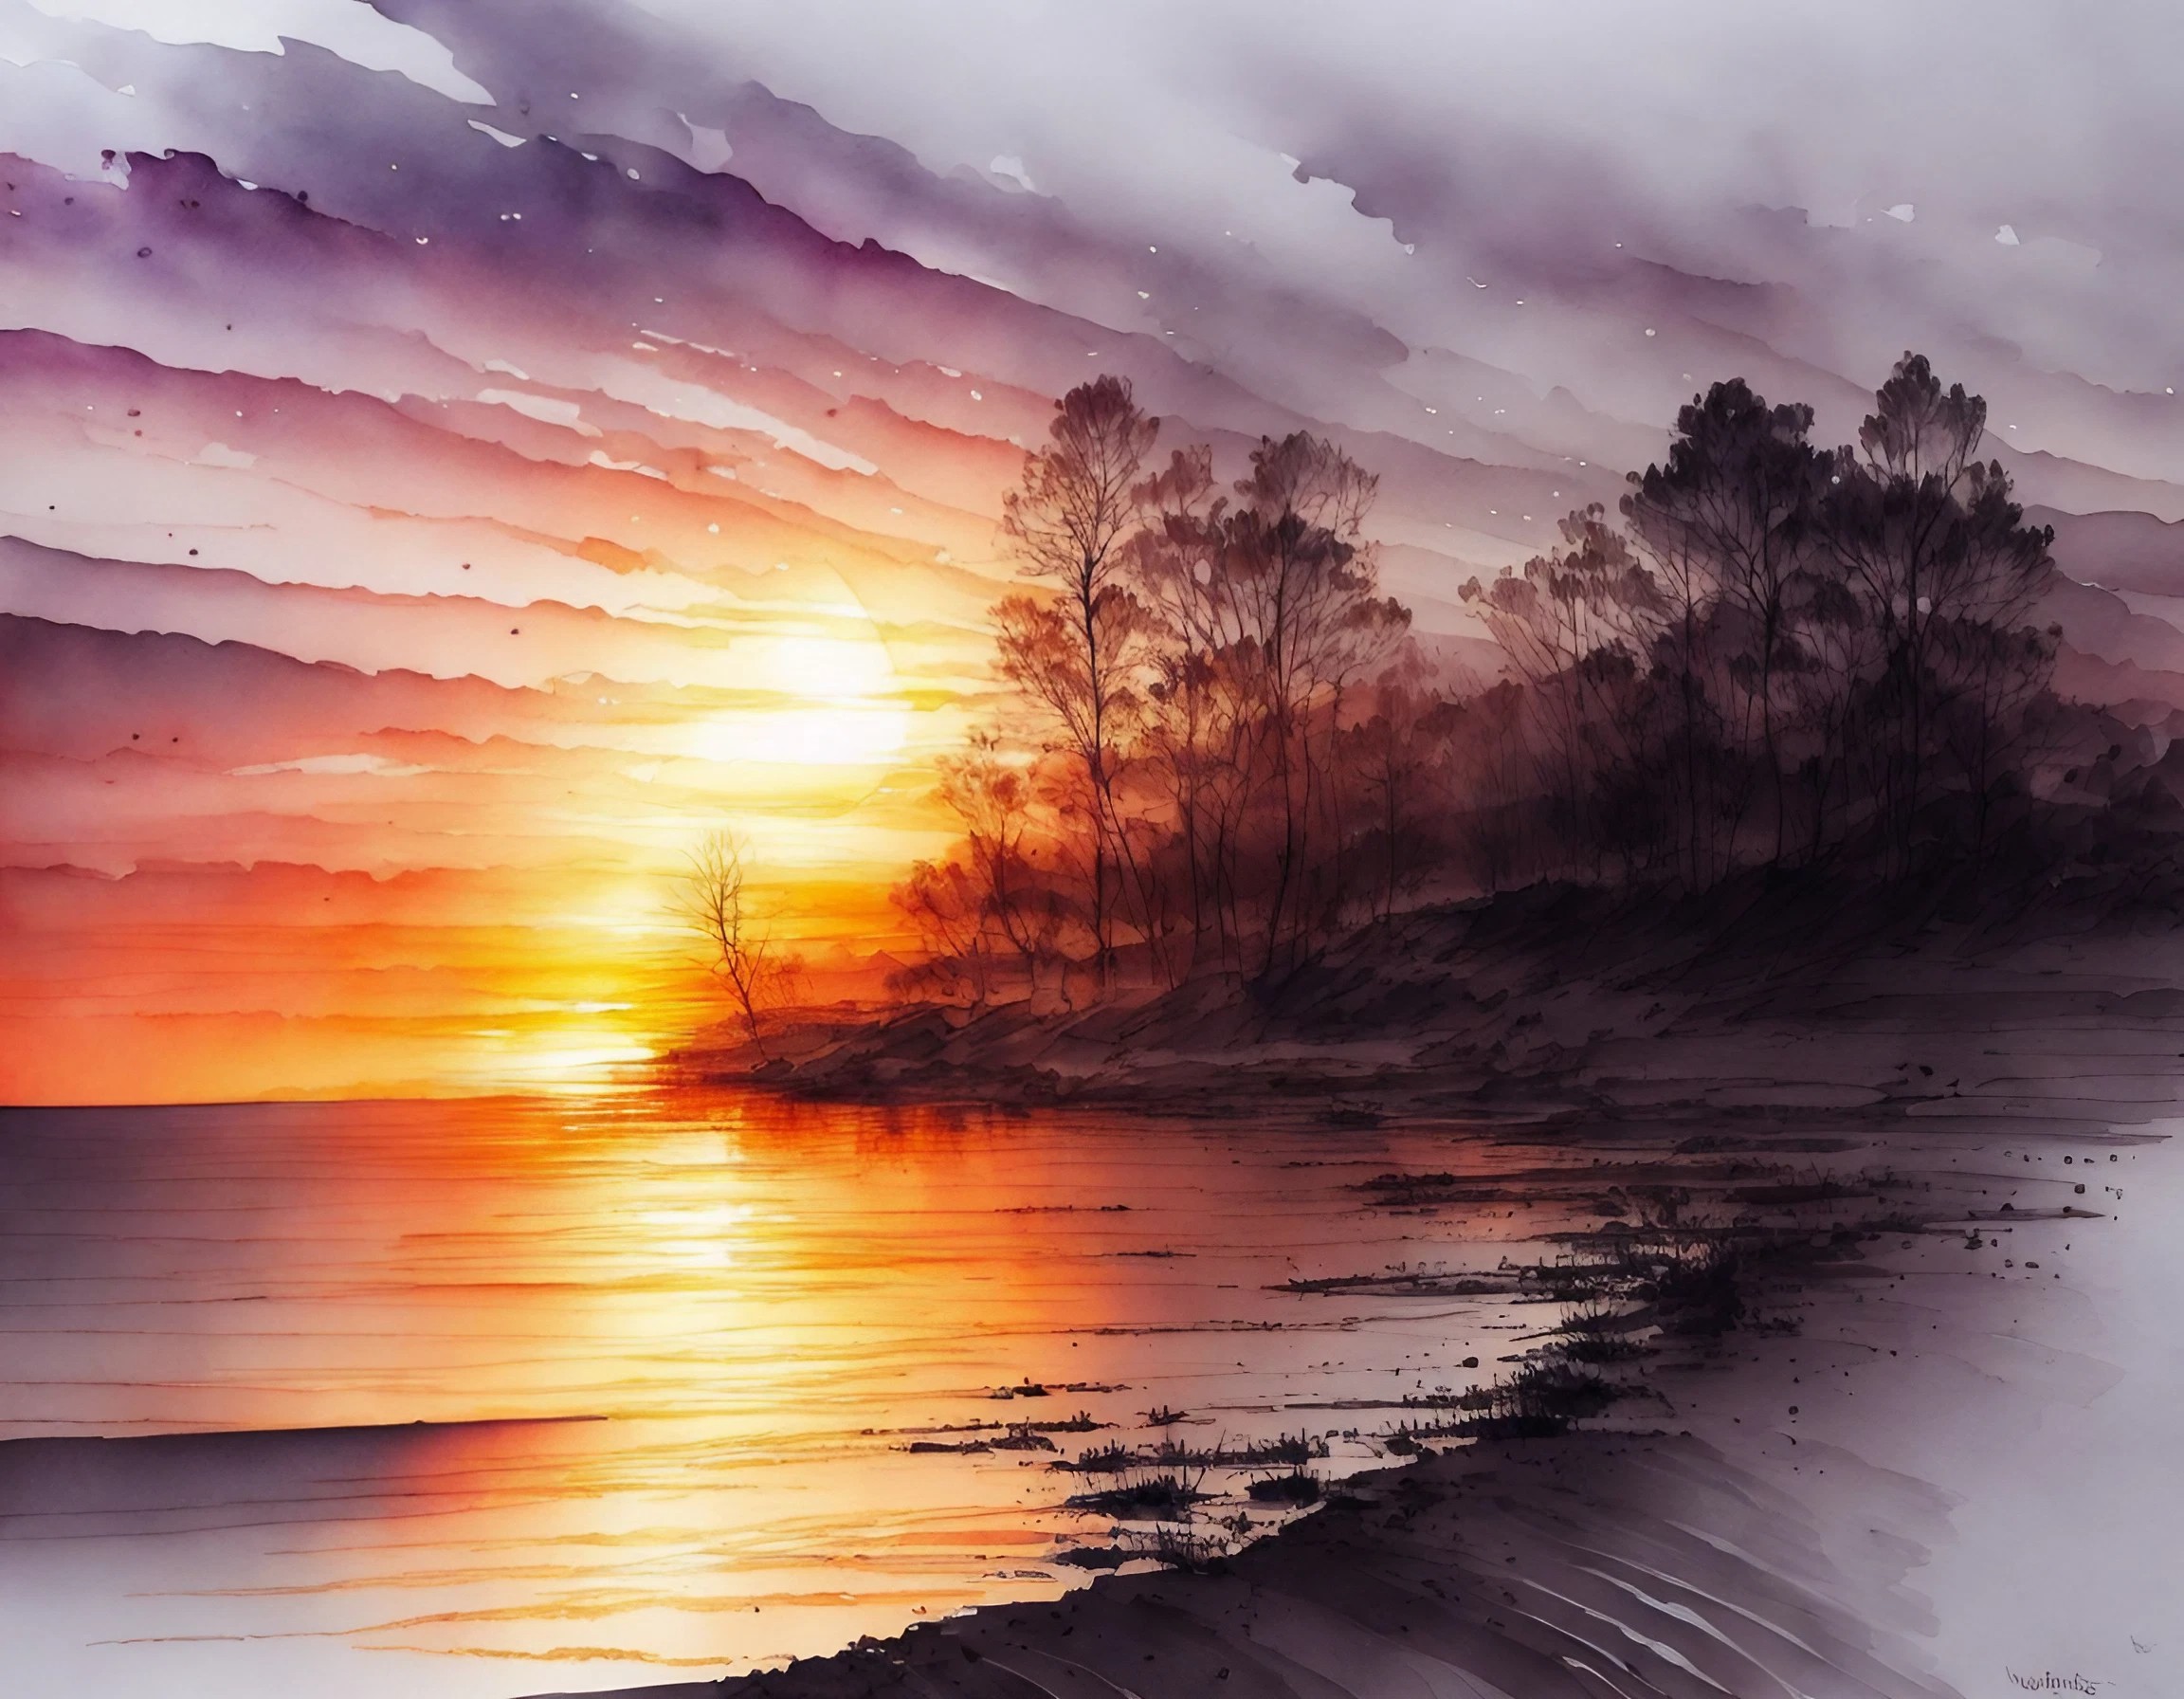 夕日に輝く浜辺の波と美しい木々の影と流れる雲の水彩画風の無料素材